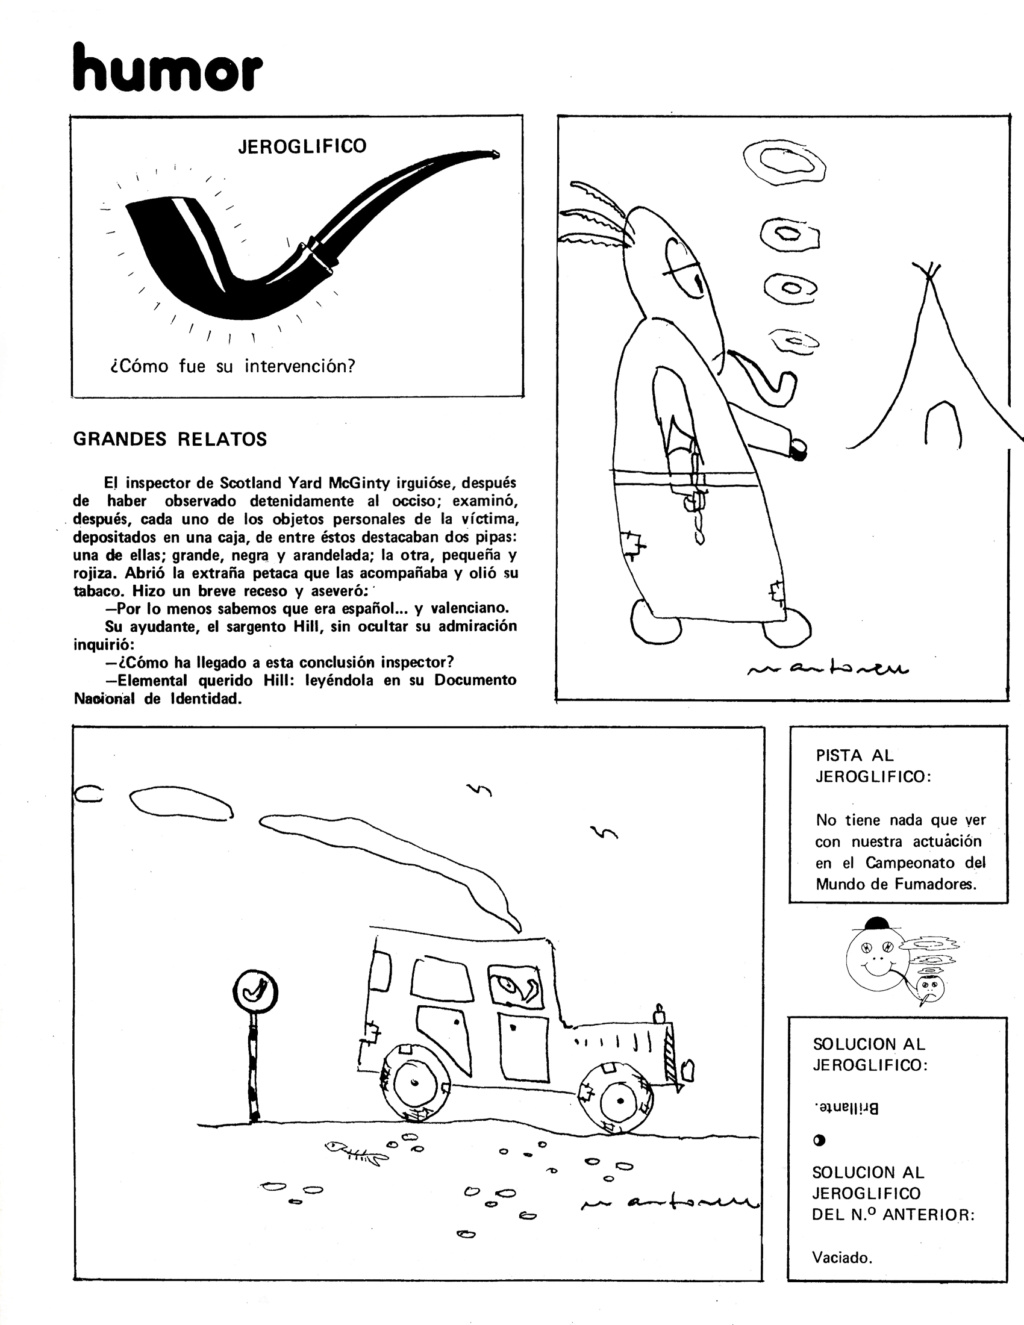 EL RINCON DE BONET - Página 3 3_1510